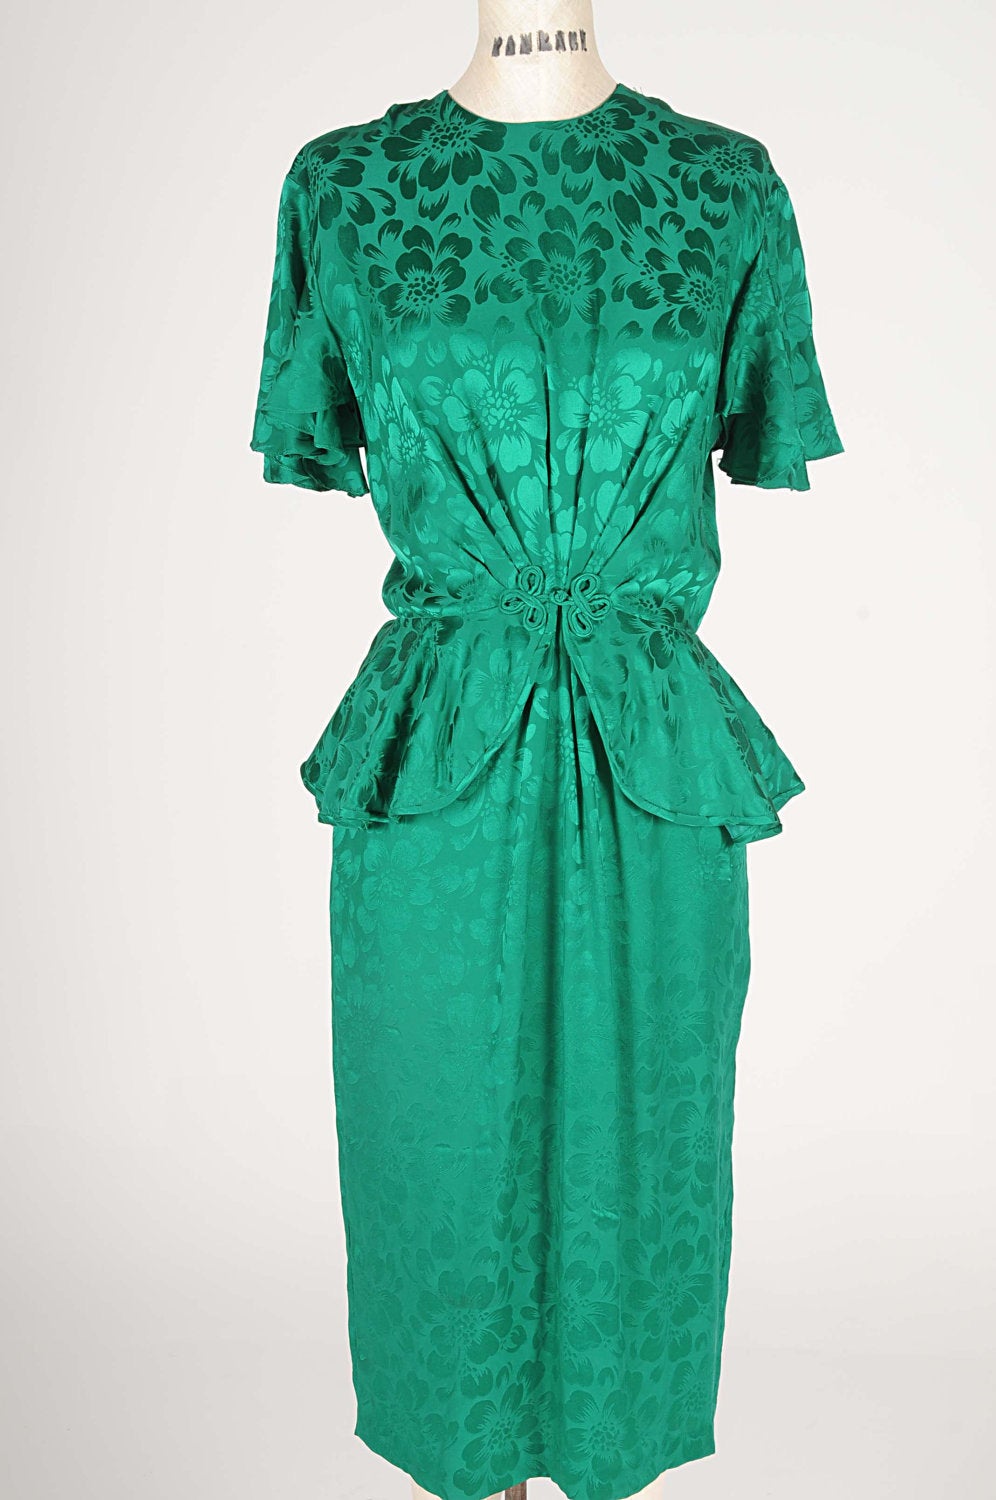 Peplum Dress Emerald Green Silk Peplum Party Dress Argenti Ruffles Sleeve Floral Dinasty